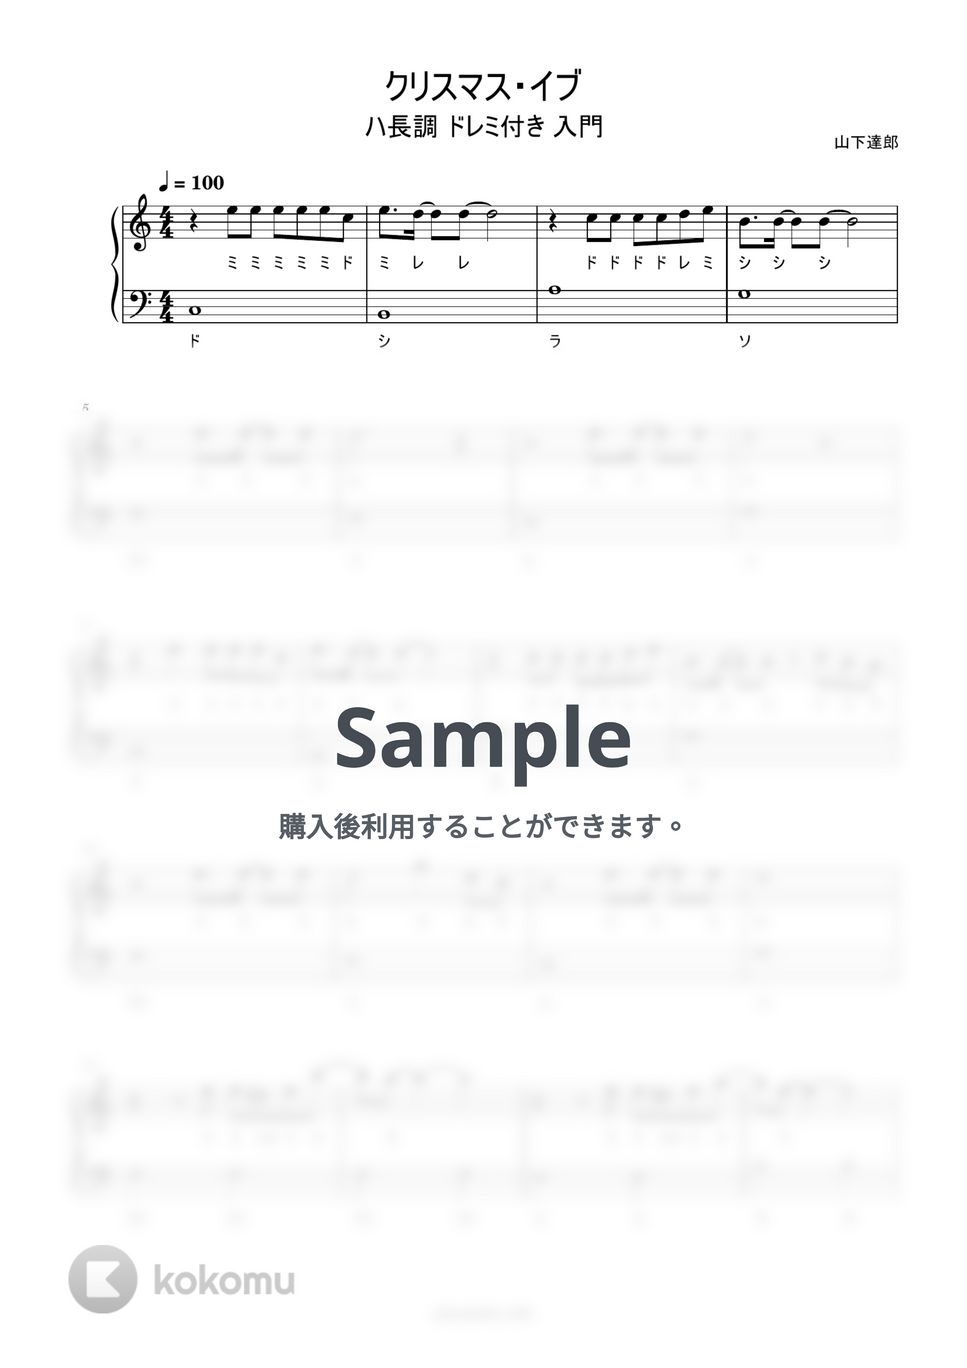 山下達郎 - クリスマス・イブ (ハ長調/ドレミ付き/簡単楽譜) by ピアノ塾